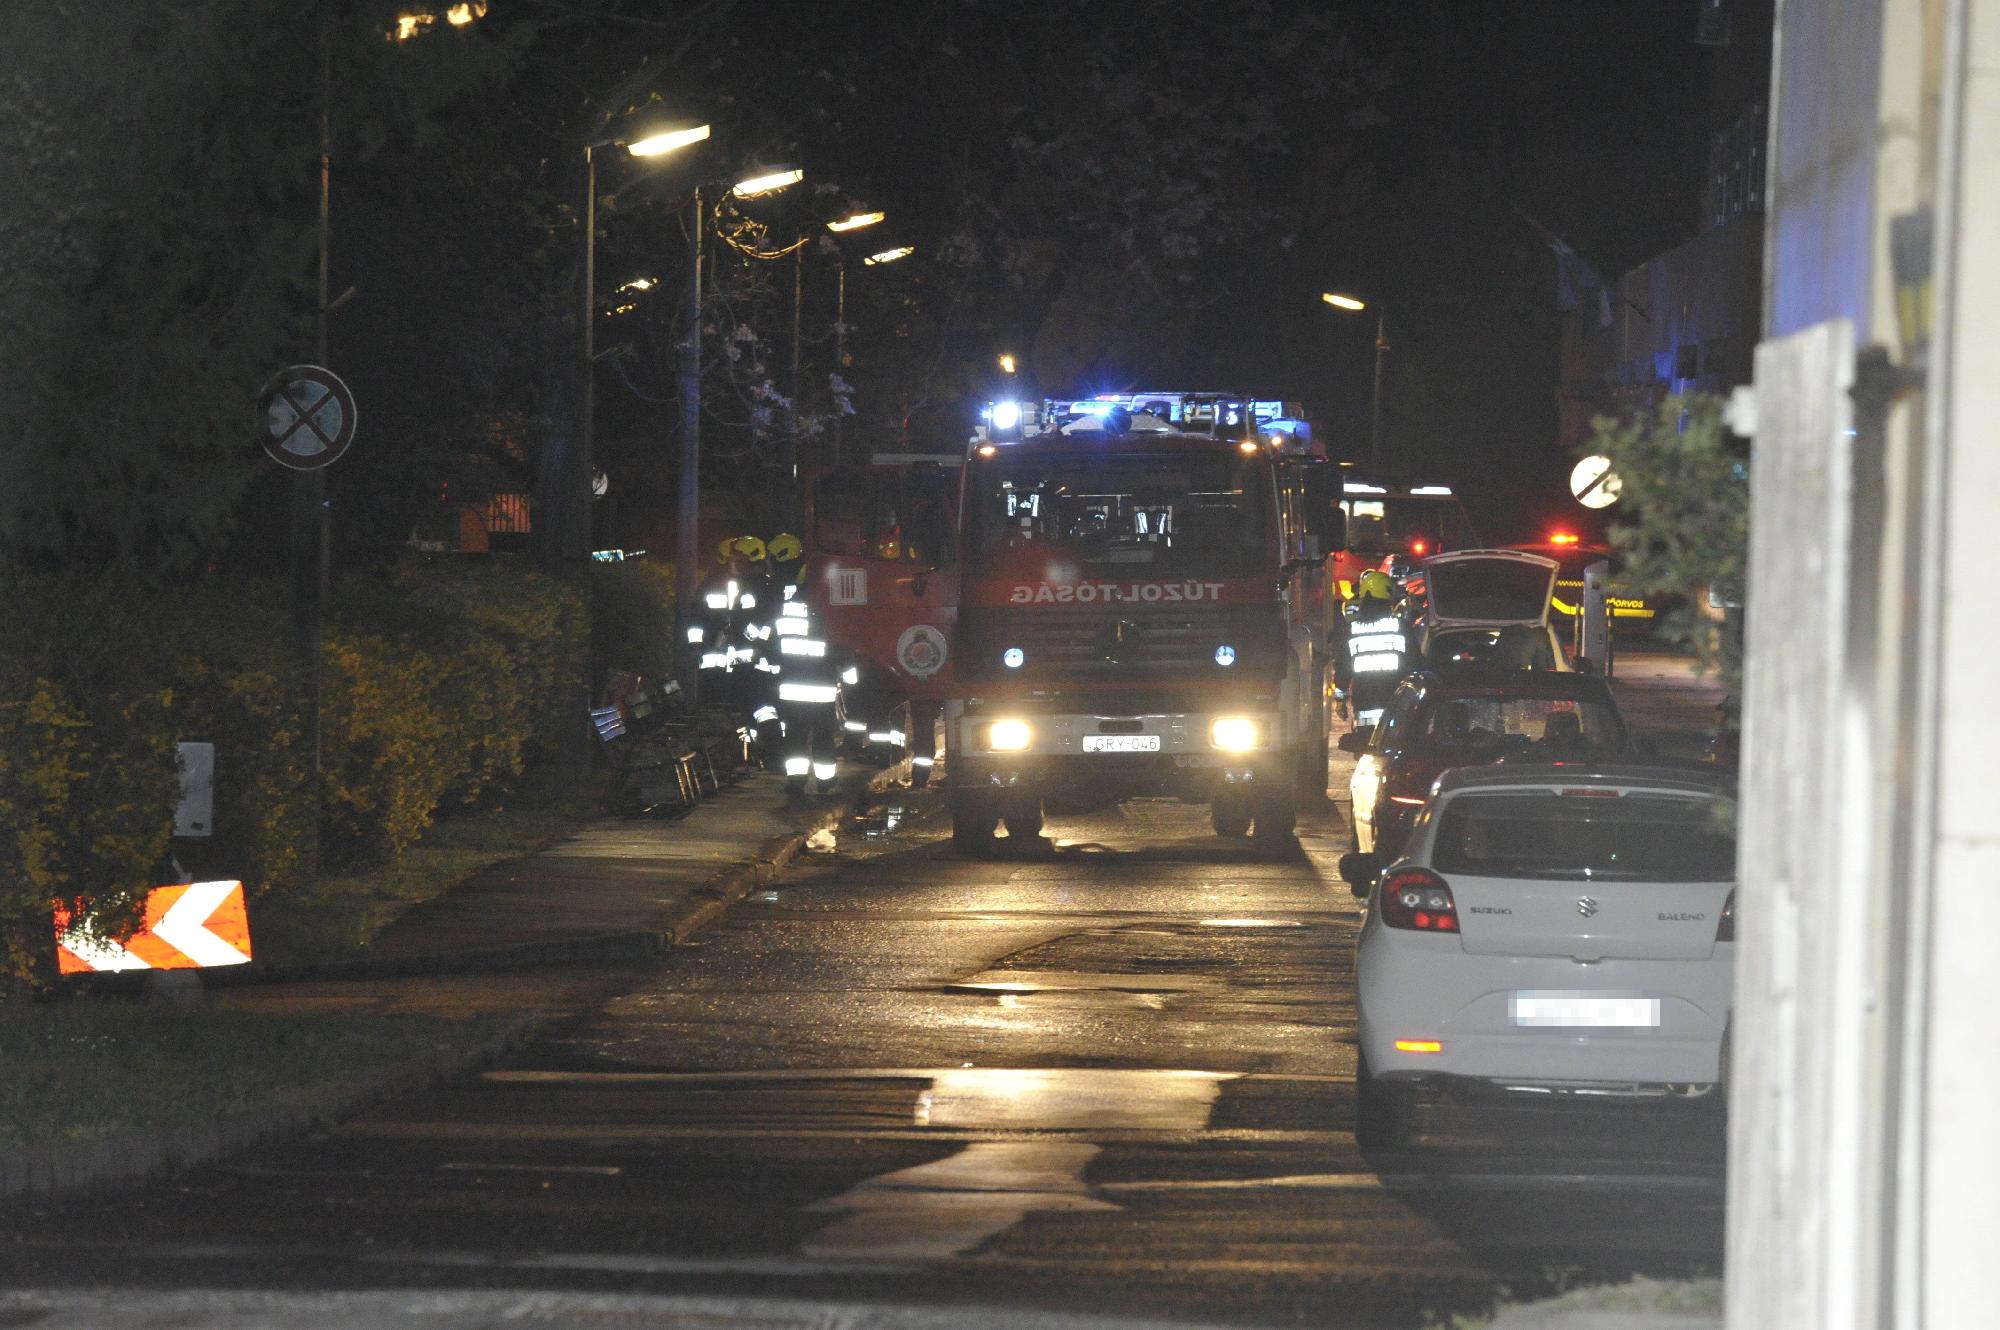 Meghalt egy beteg a Szent Margit Kórházban, miután tűz ütött ki